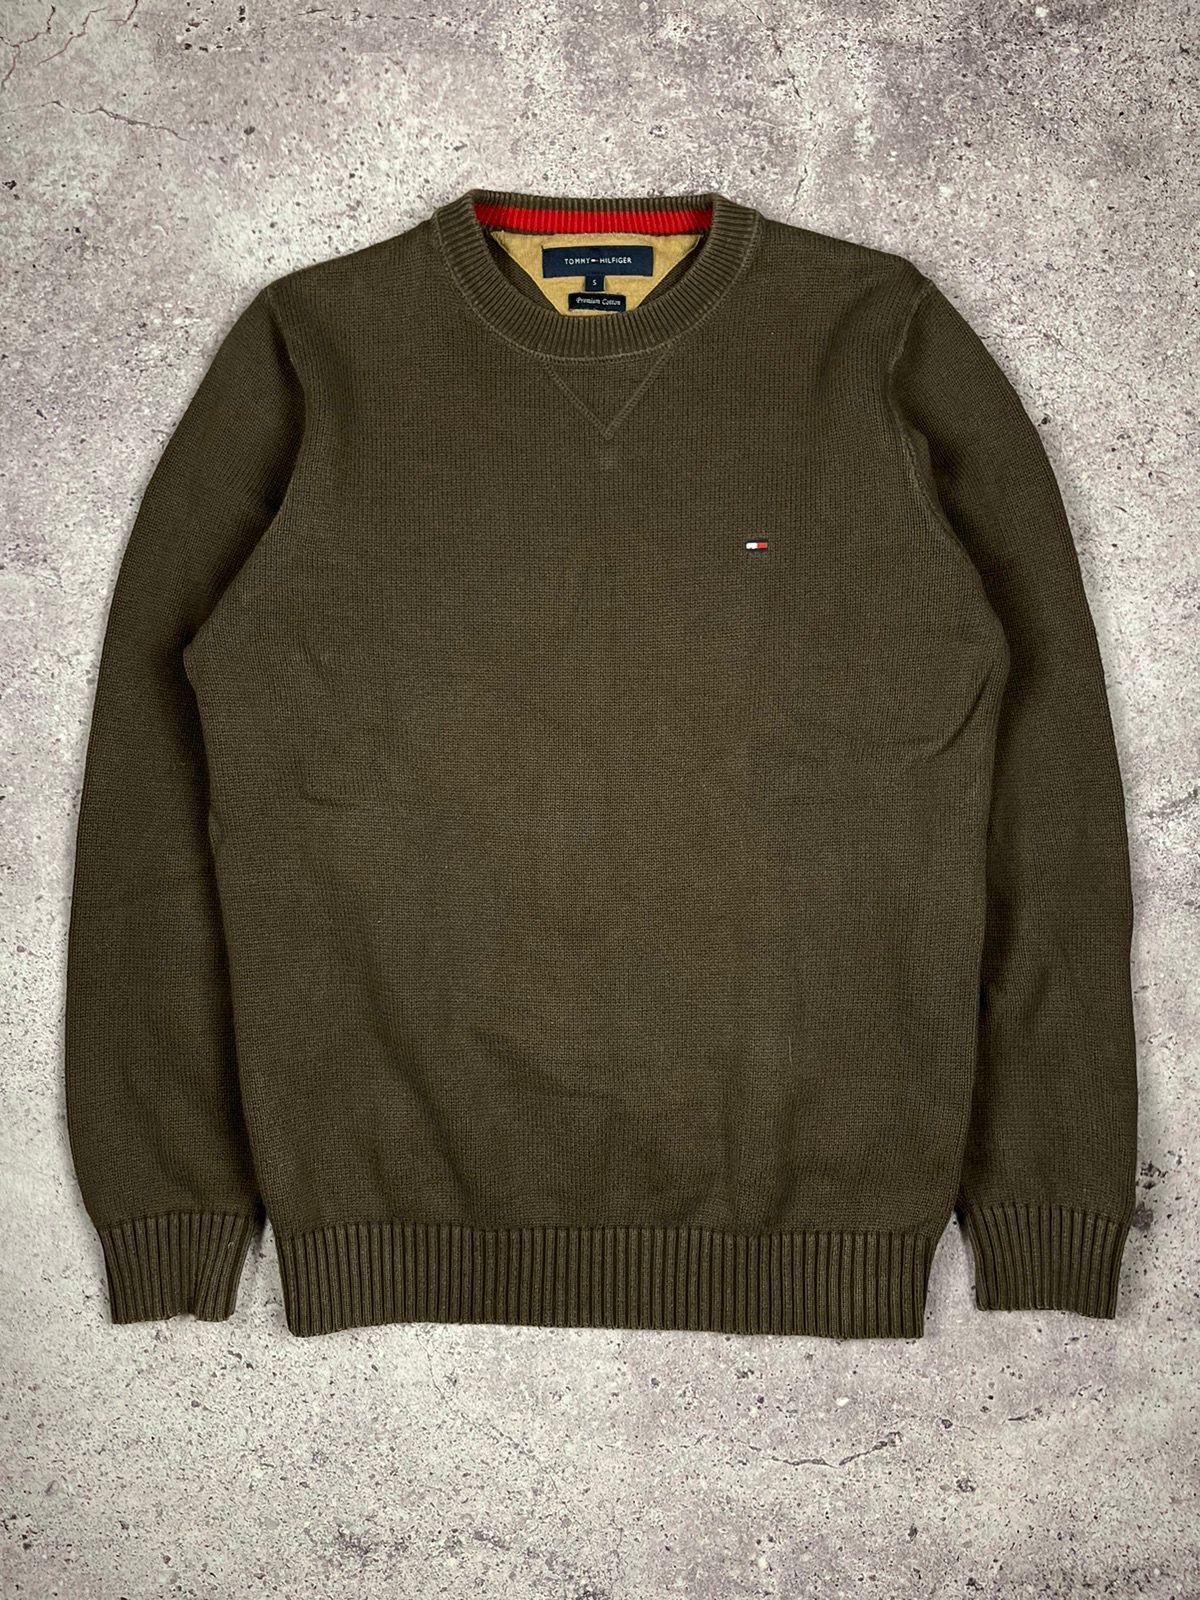 Pre-owned Tommy Hilfiger X Vintage Tommy Hilfiger Sweater Brown Vintage